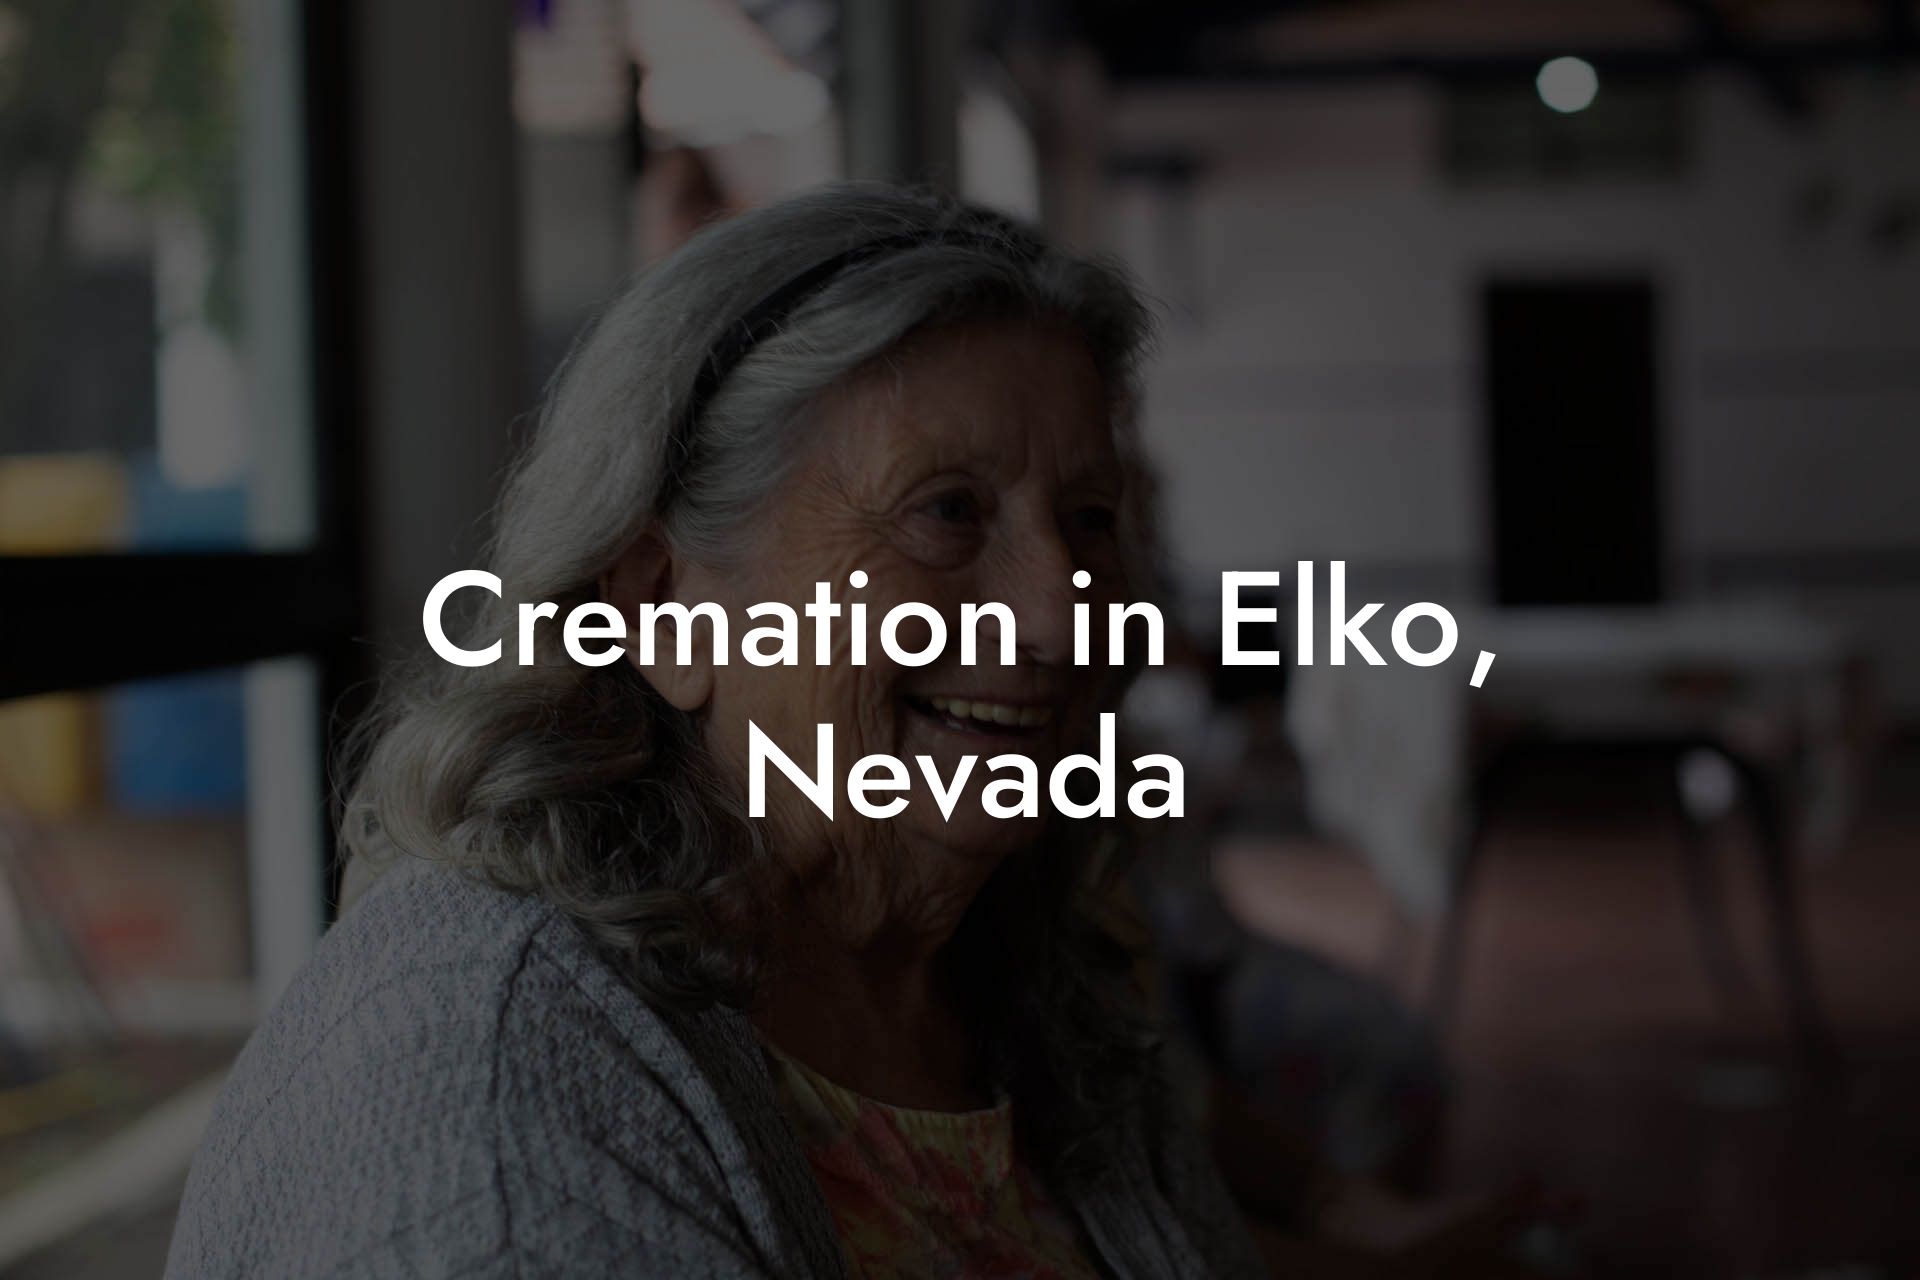 Cremation in Elko, Nevada